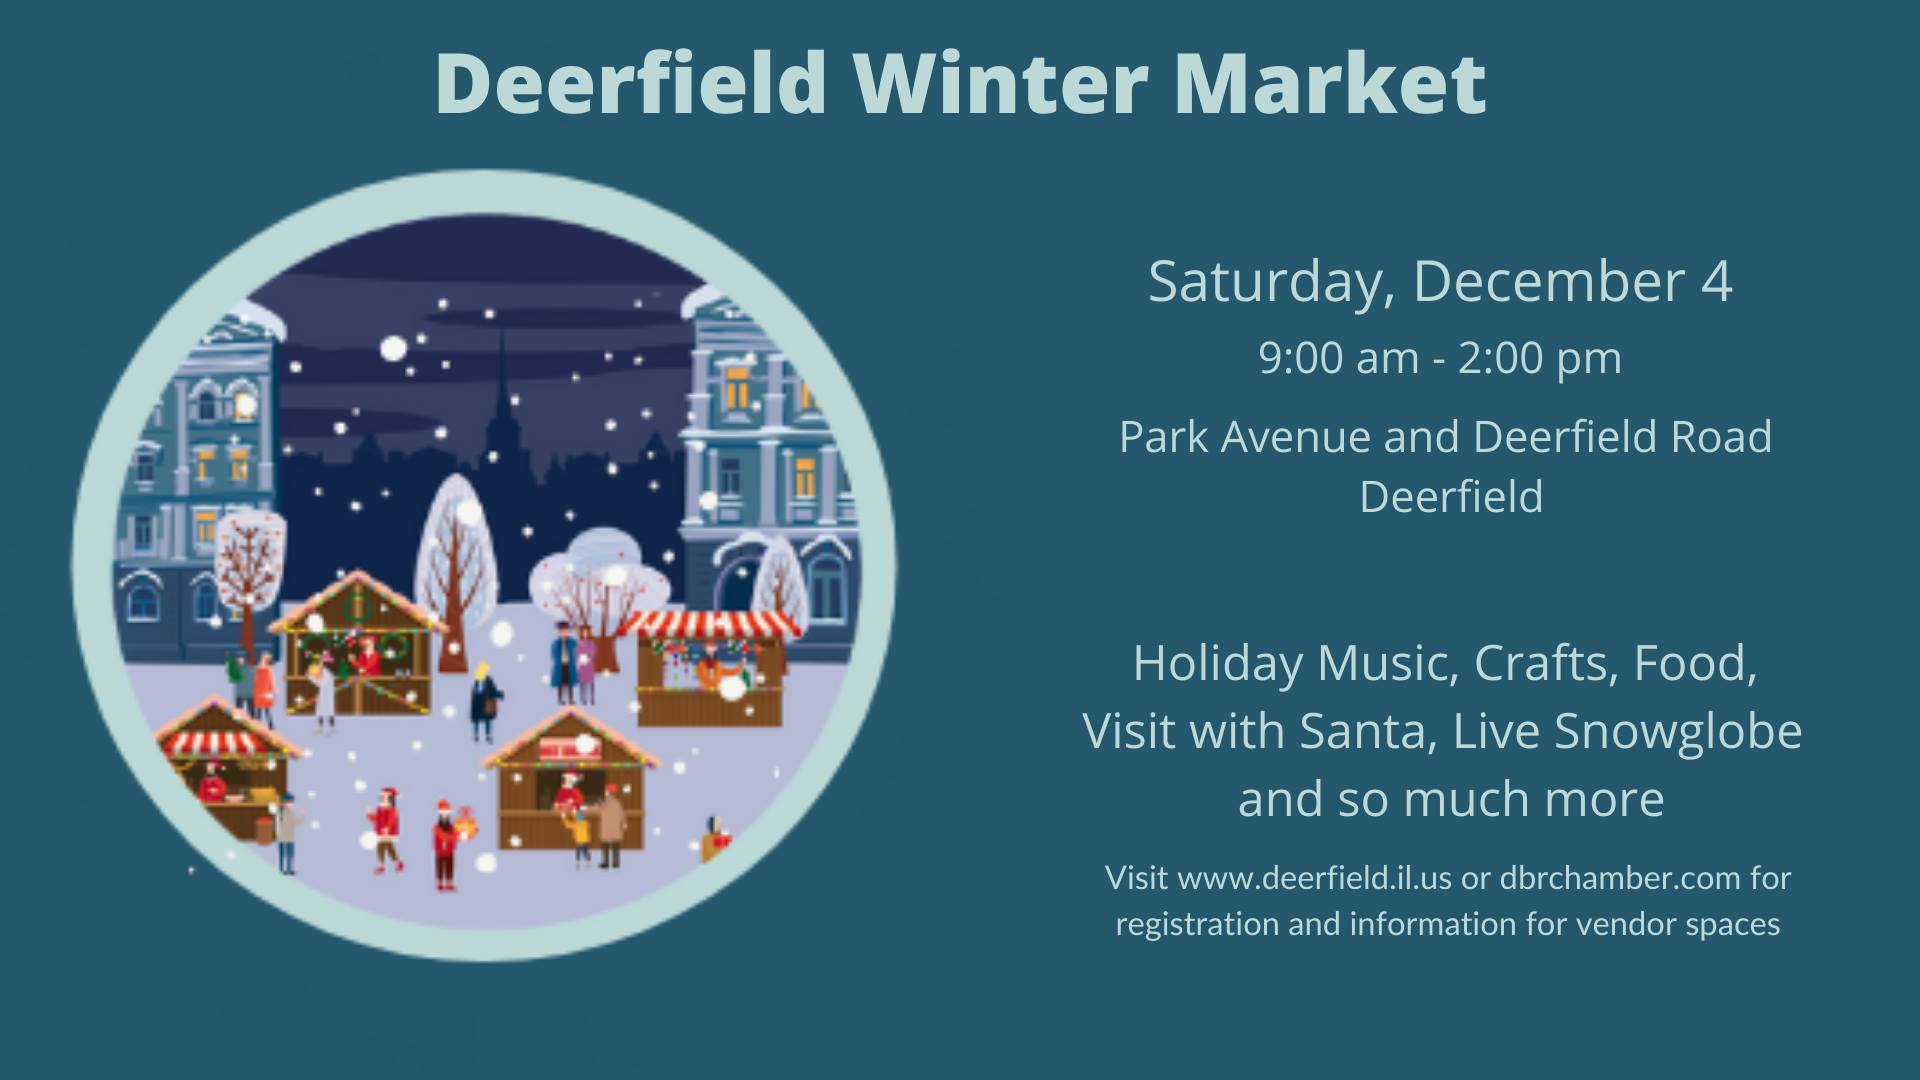 Deerfield's Winter Market